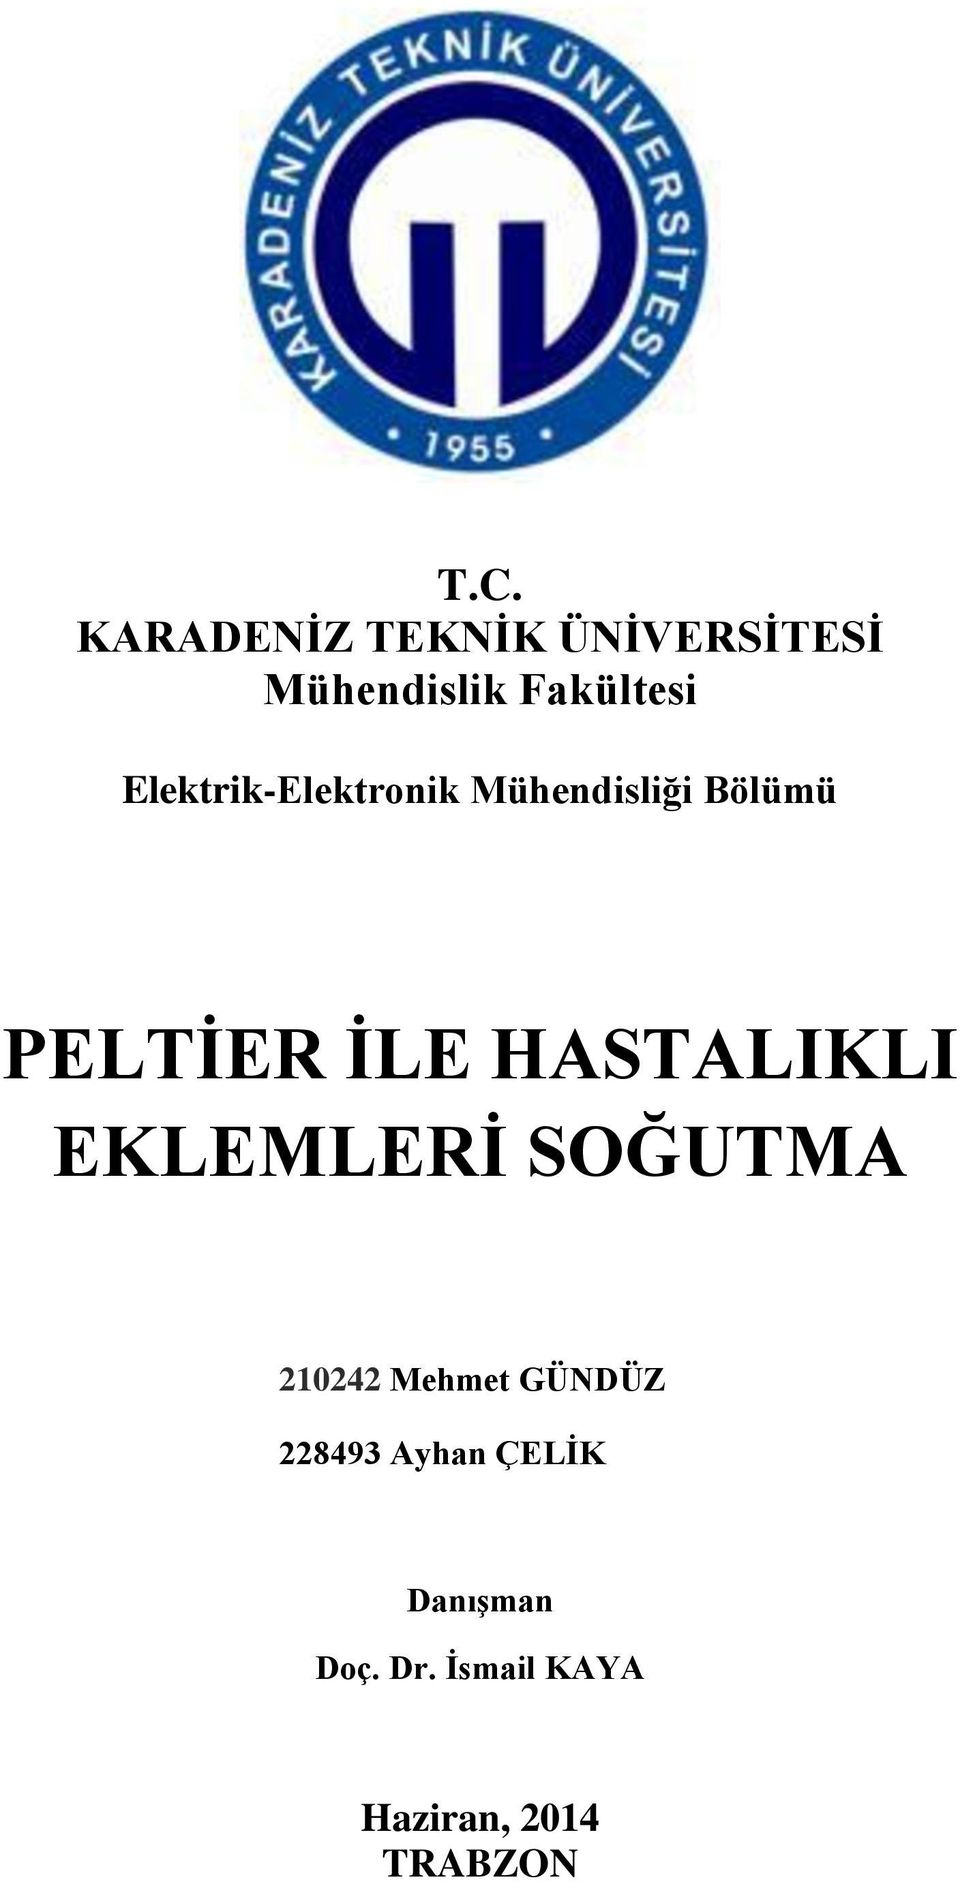 HSTLIKLI EKLEMLERİ SOĞUTM 210242 Mehmet GÜNDÜZ 228493